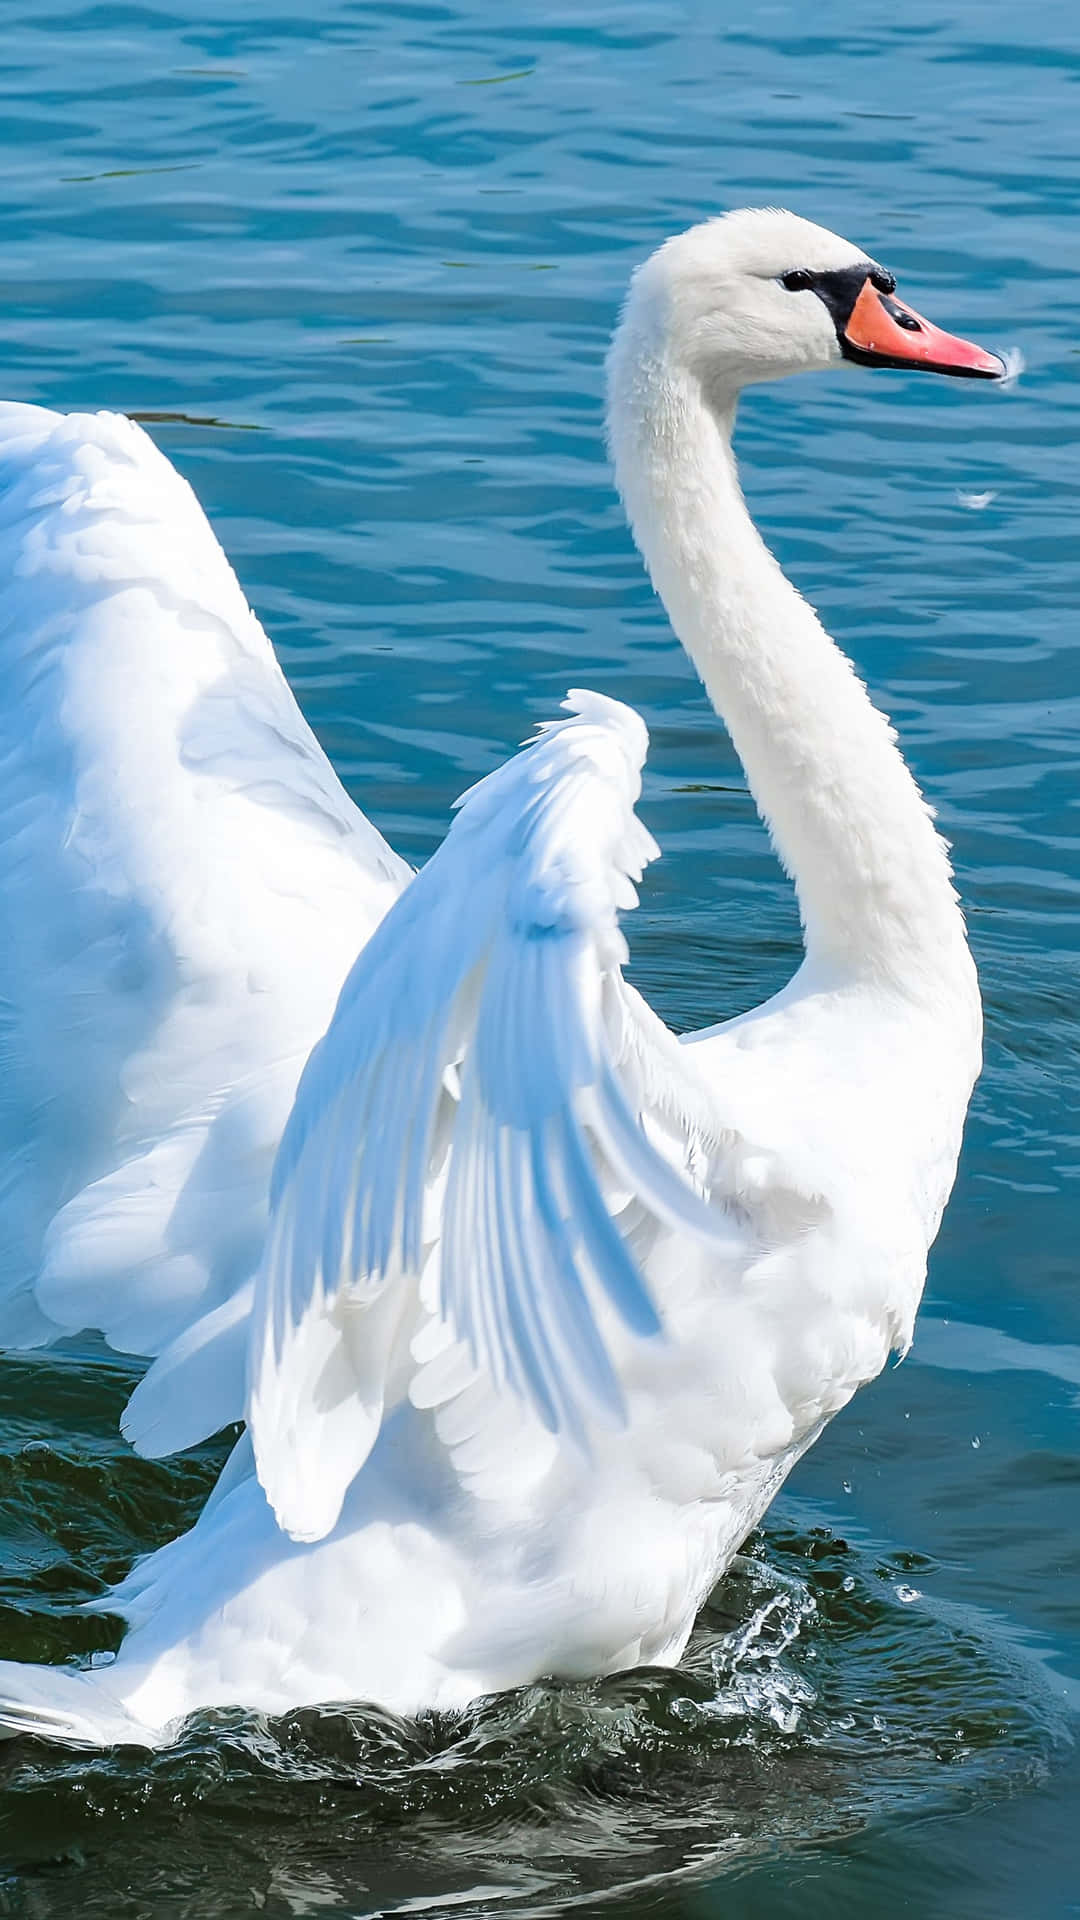 Imagende Un Cisne Con Plumas Blancas En El Agua